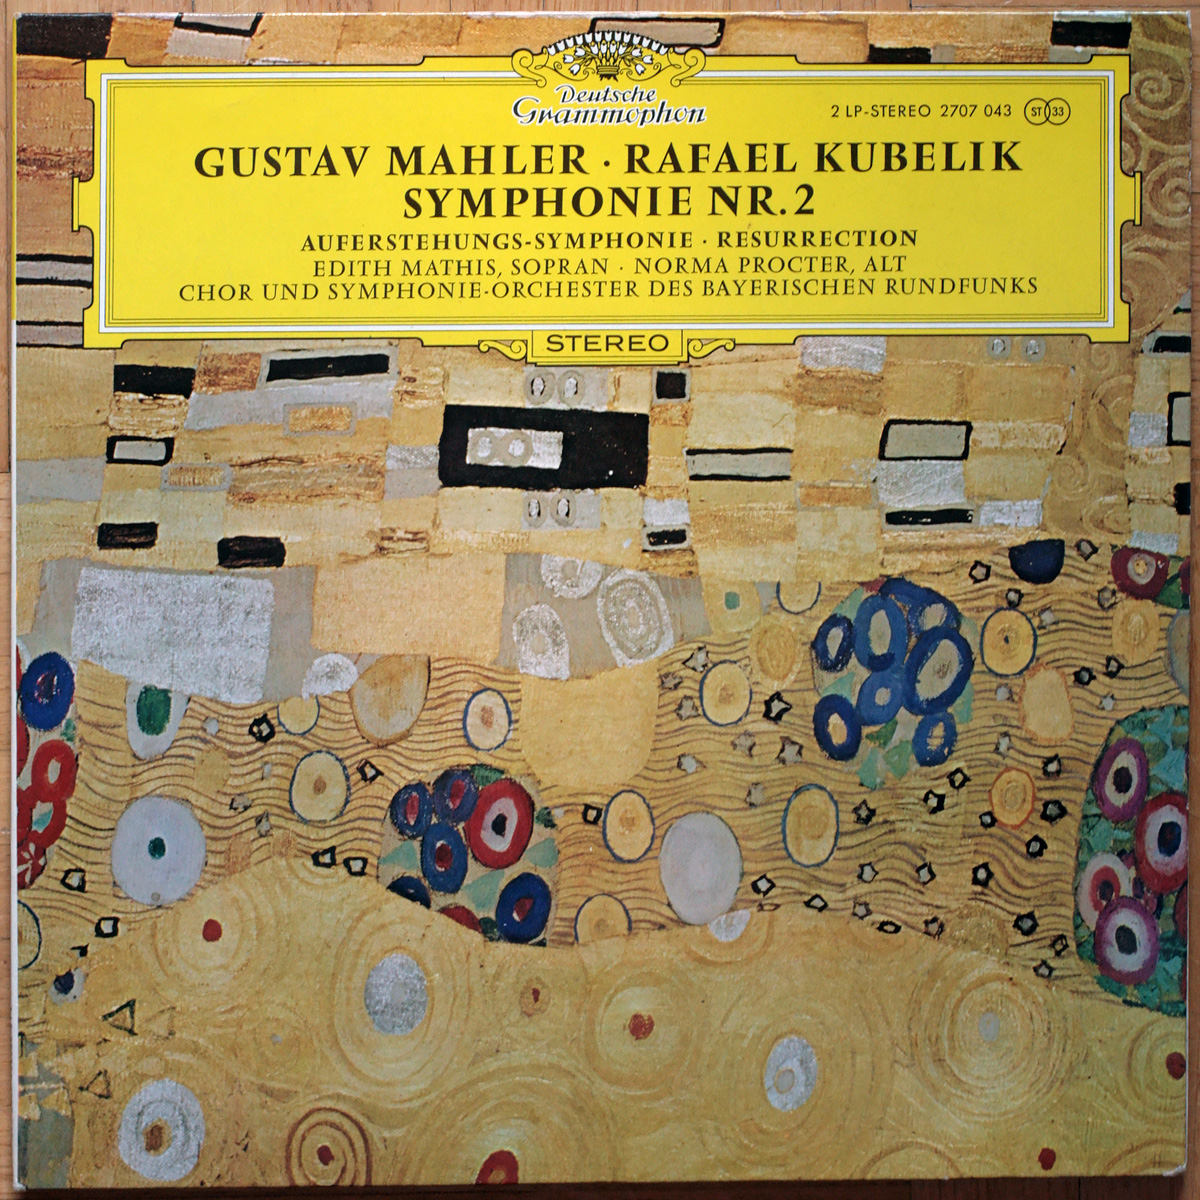 Mahler • Symphonie n° 2 "Auferstehung" • DGG 2707 043 • Edith Mathis • Norma Procter • Symphonie-Orchester des Bayerischen Rundfunks • Rafael Kubelik